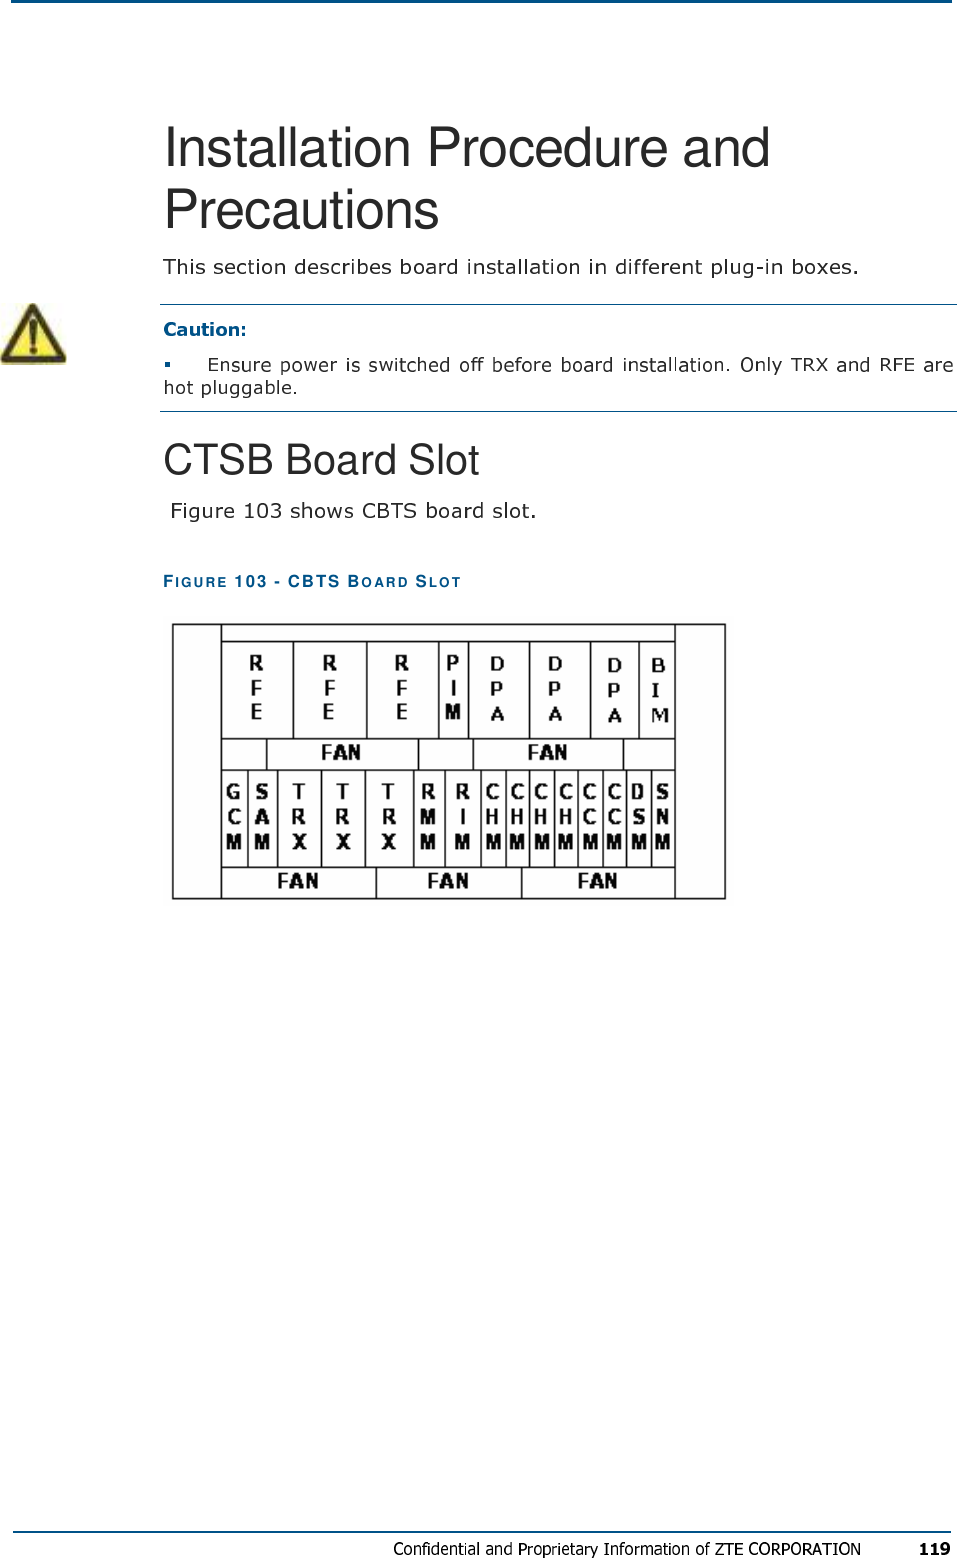 Installation Procedure and Precautions  CTSB Board Slot  FIG U R E   103 - CBTS BO AR D   SL O T    